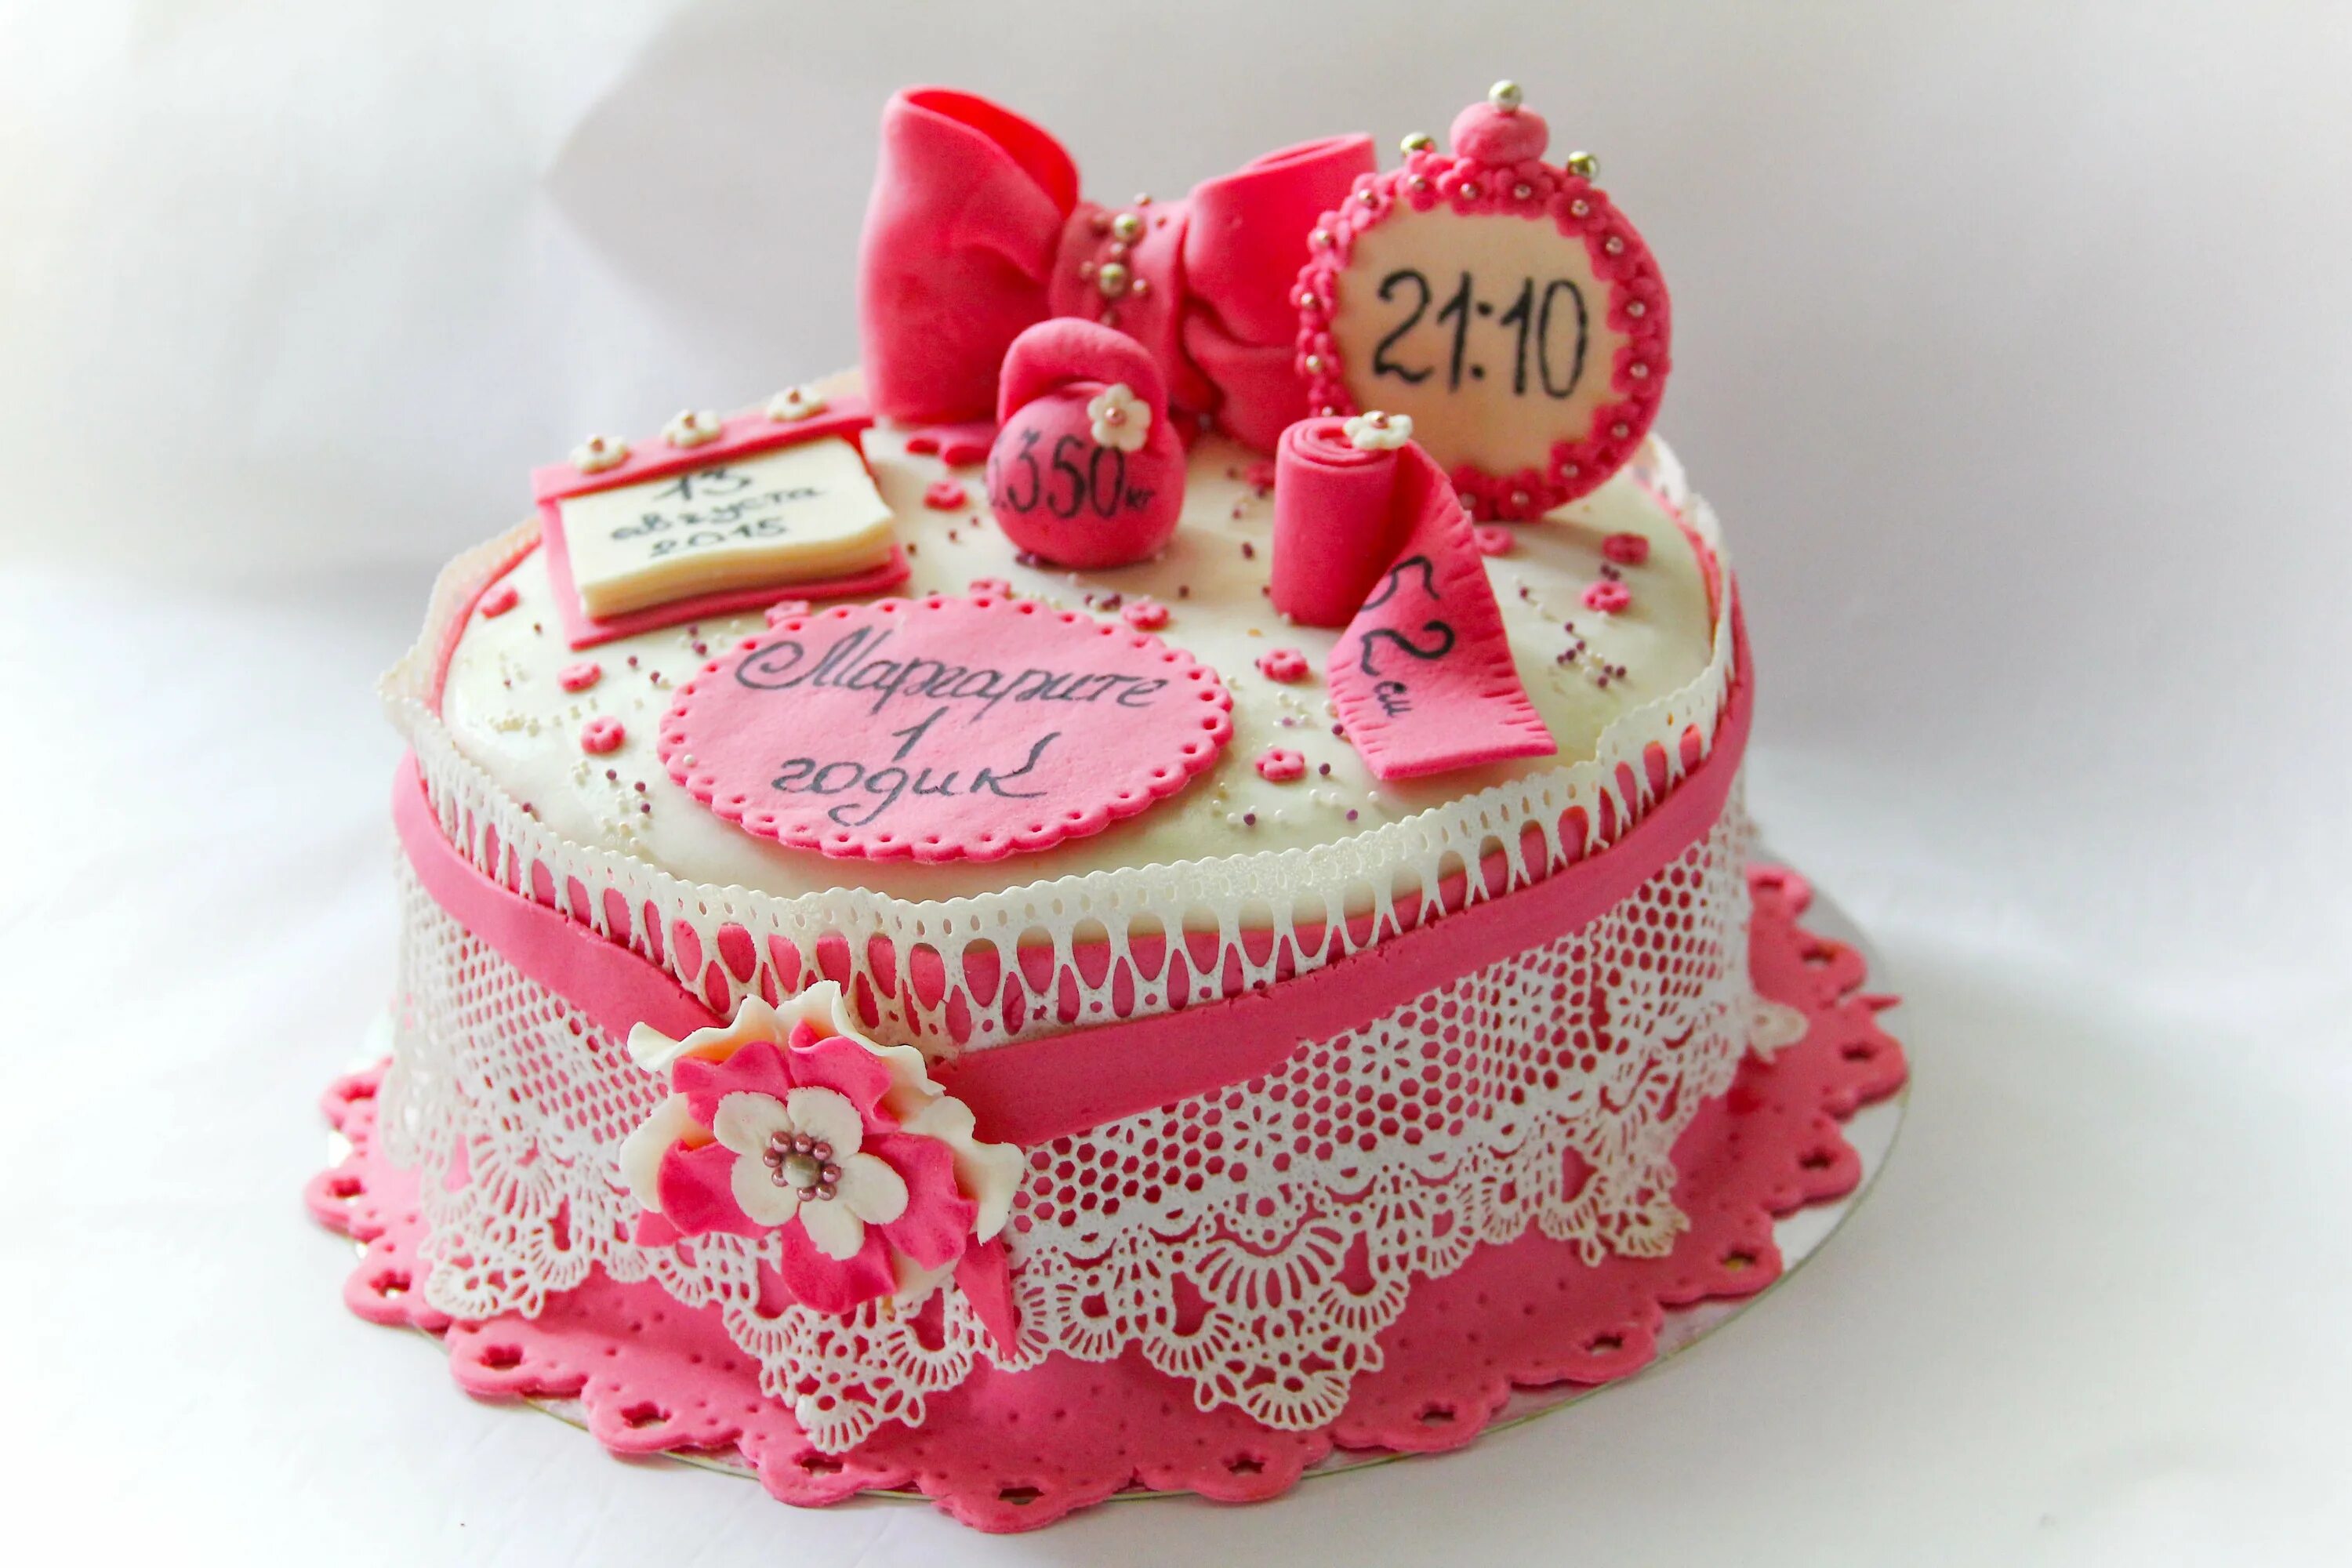 На год красивый торт девочке. Тортики в розовом цвете на годик. Торт с метрикой для девочки в бело-розовом цвете. Торт с короной и метрикой. Тортик девочке на годик цветовая гамма.